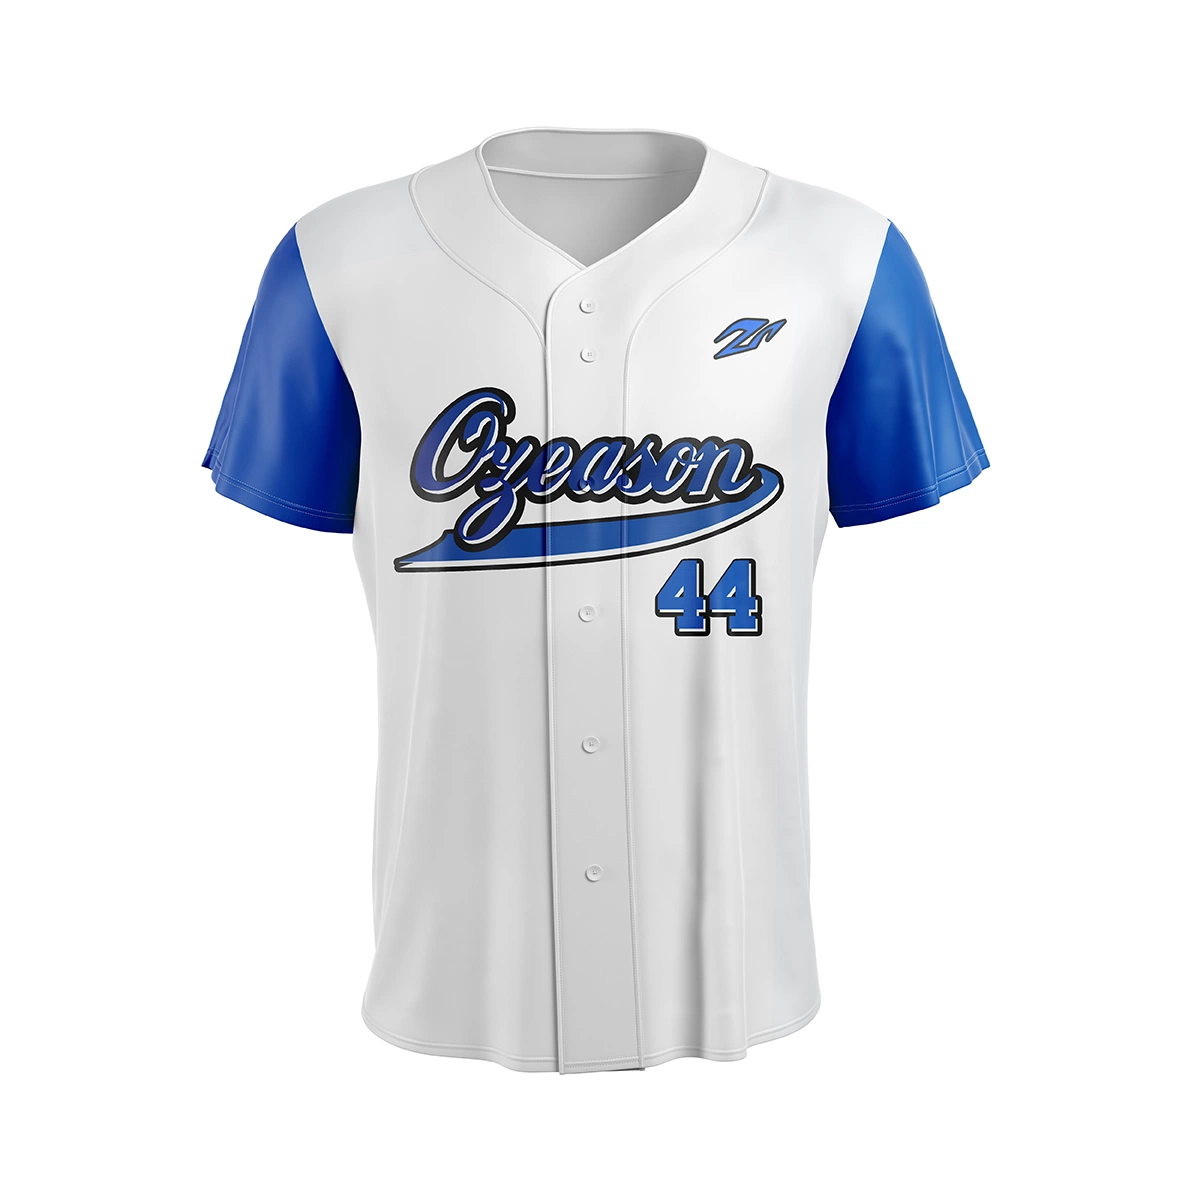 Benutzerdefinierte Großhandel Jugend Baseball Jersey Button Unbeschriftet Baseball Uniform Sets